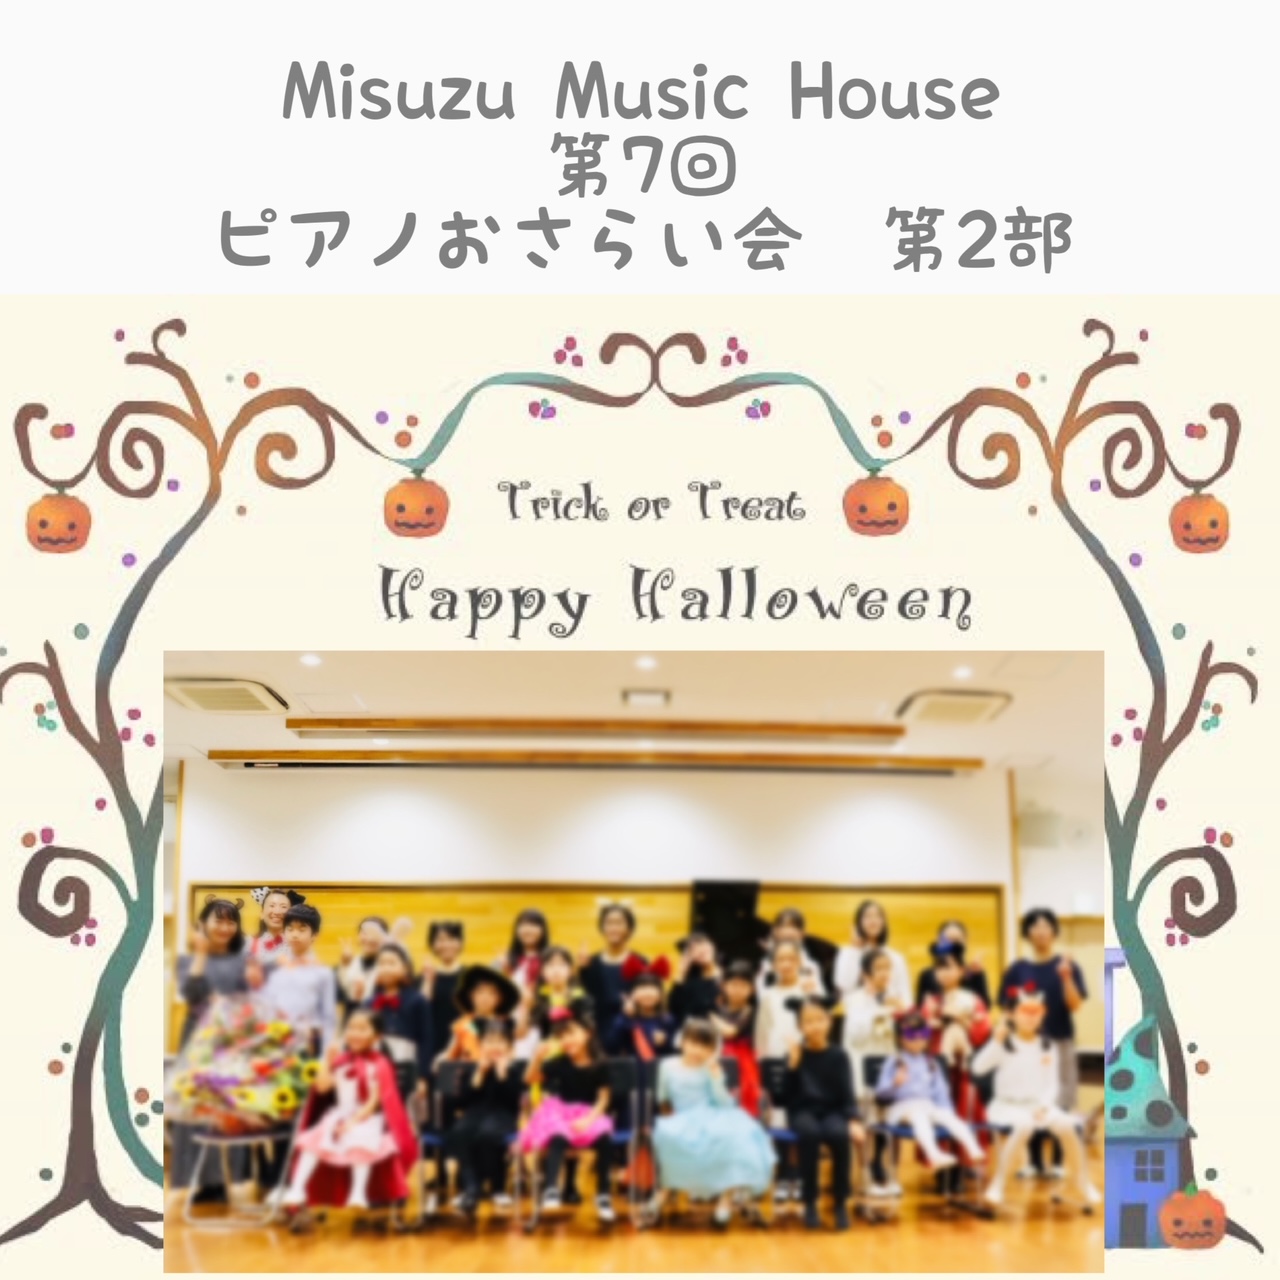 photo3.JPG alt="Misuzu Music Houseおさらい会"